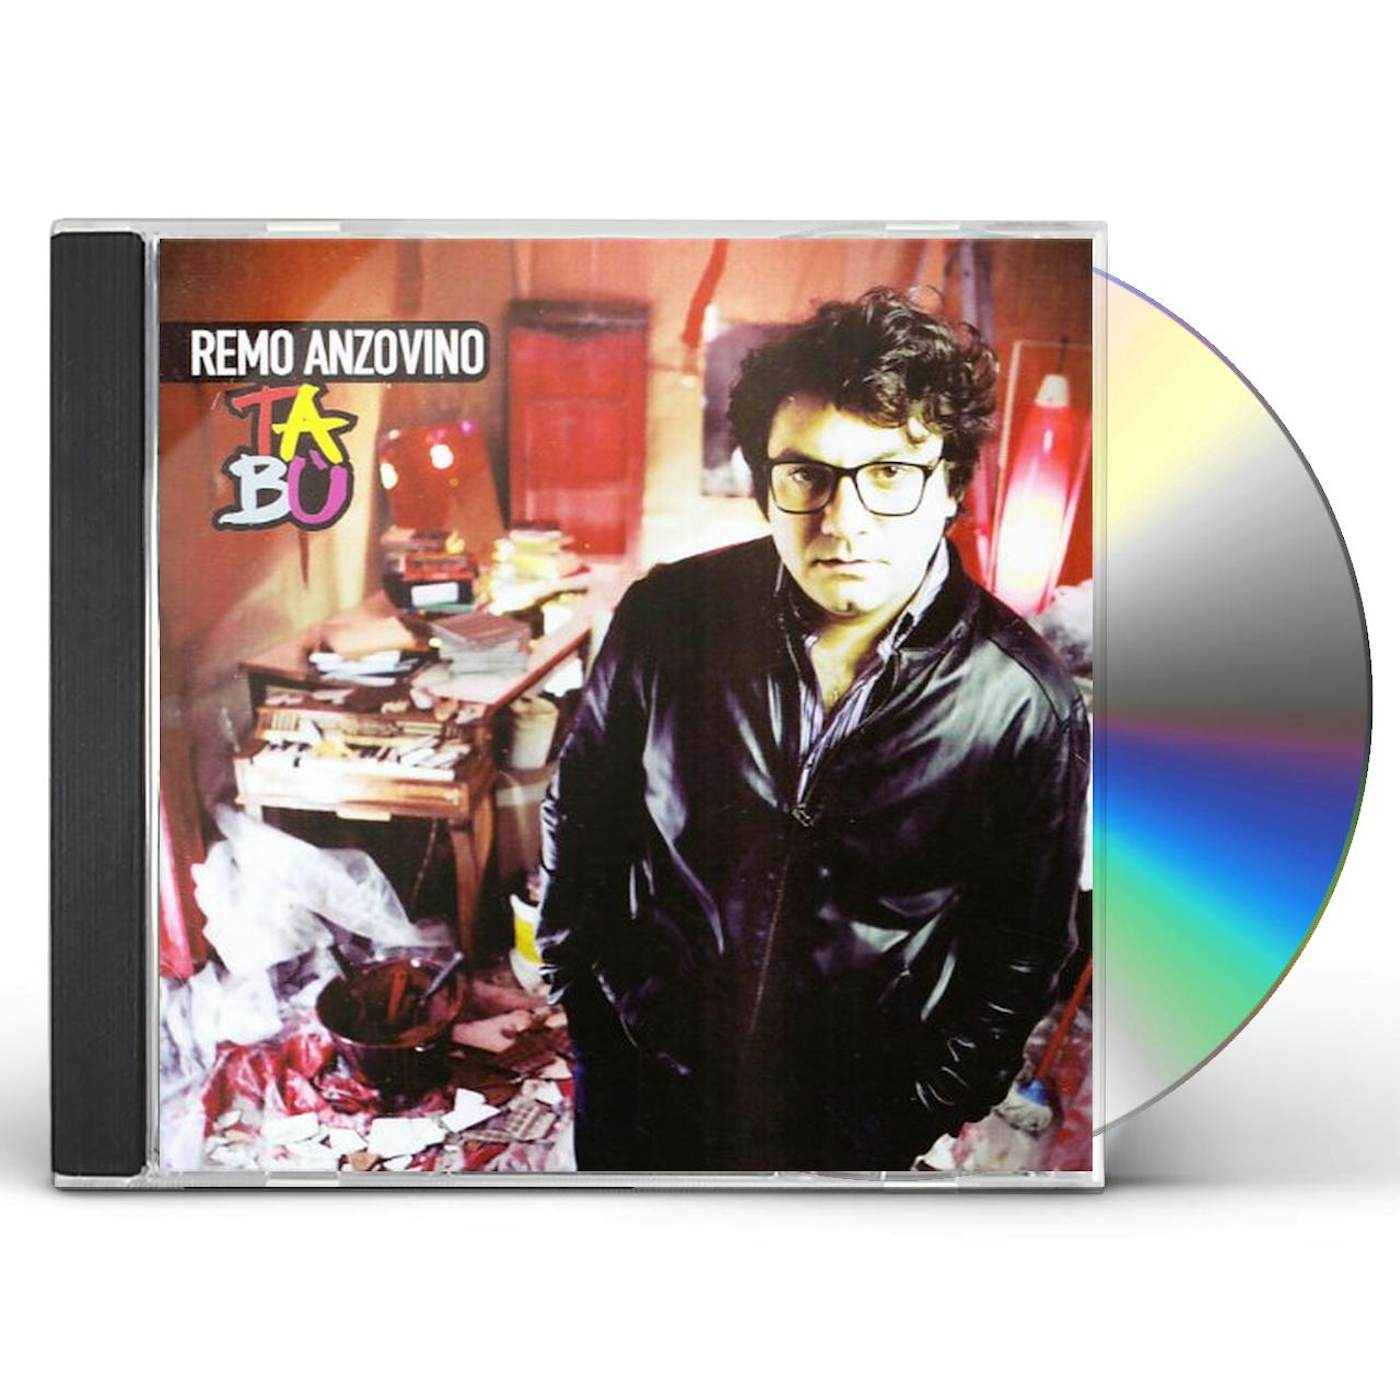 Remo Anzovino TABU' CD